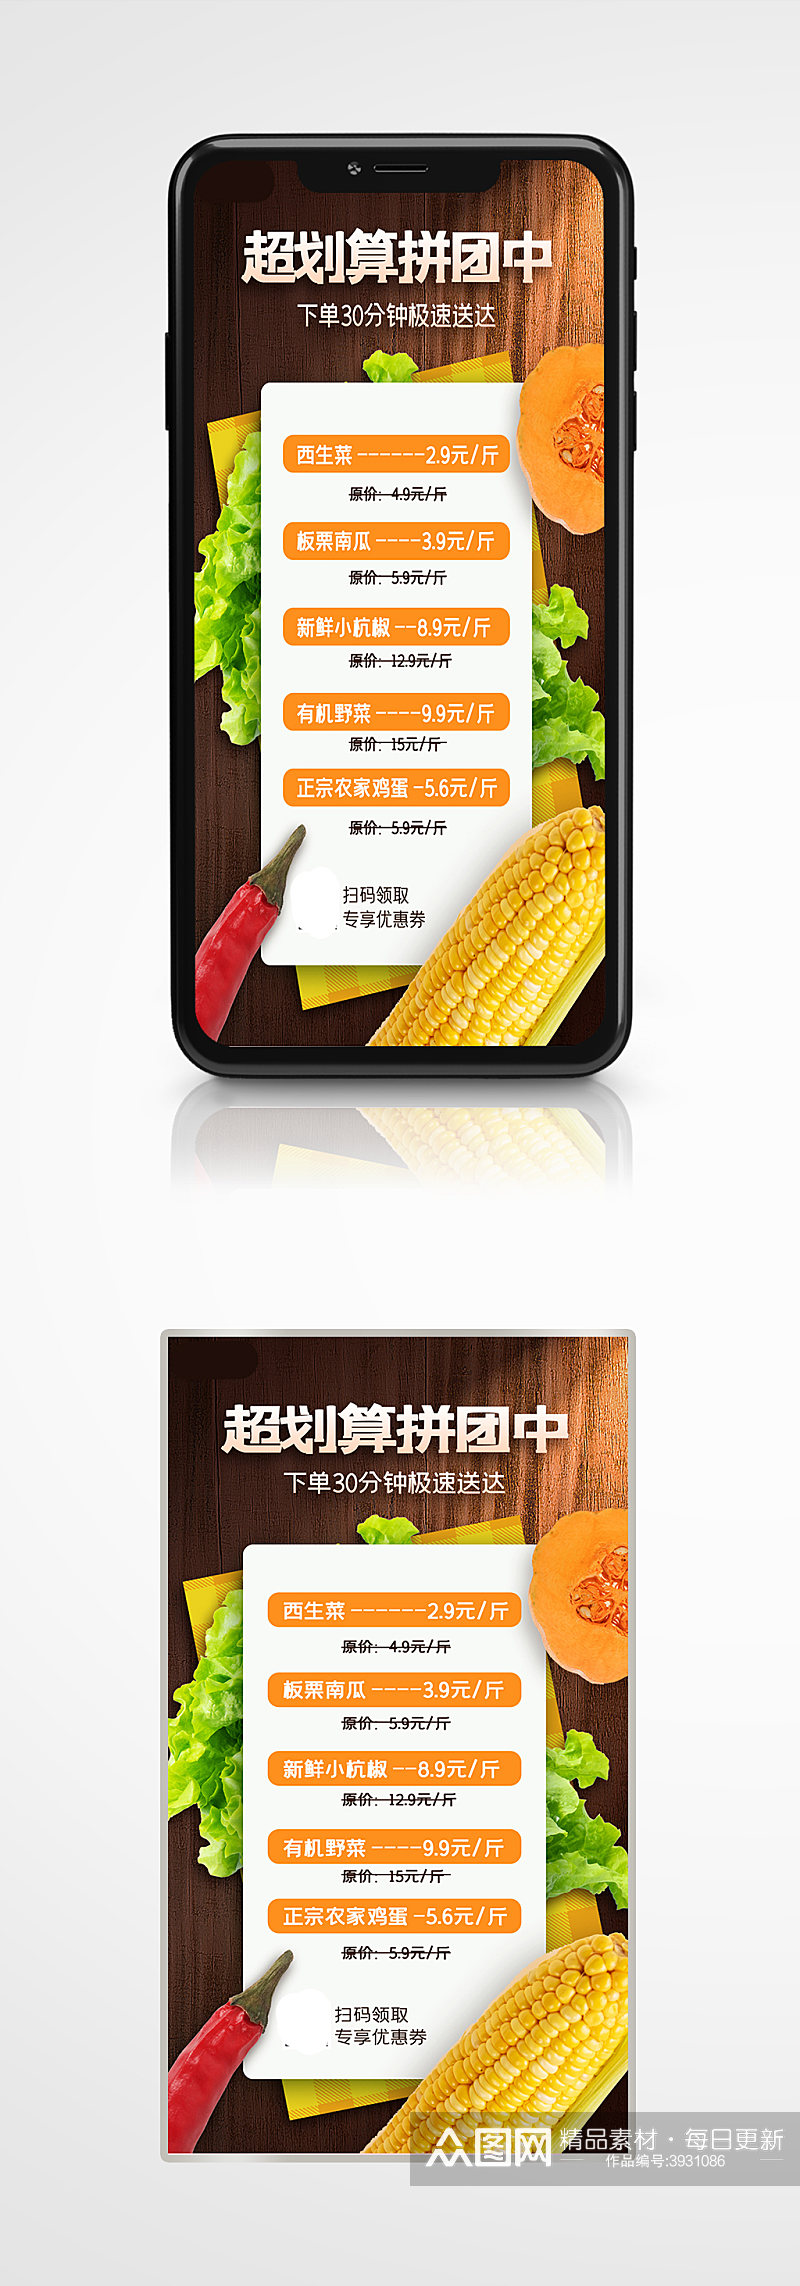 果蔬生鲜拼团促销手机海报水果超市素材